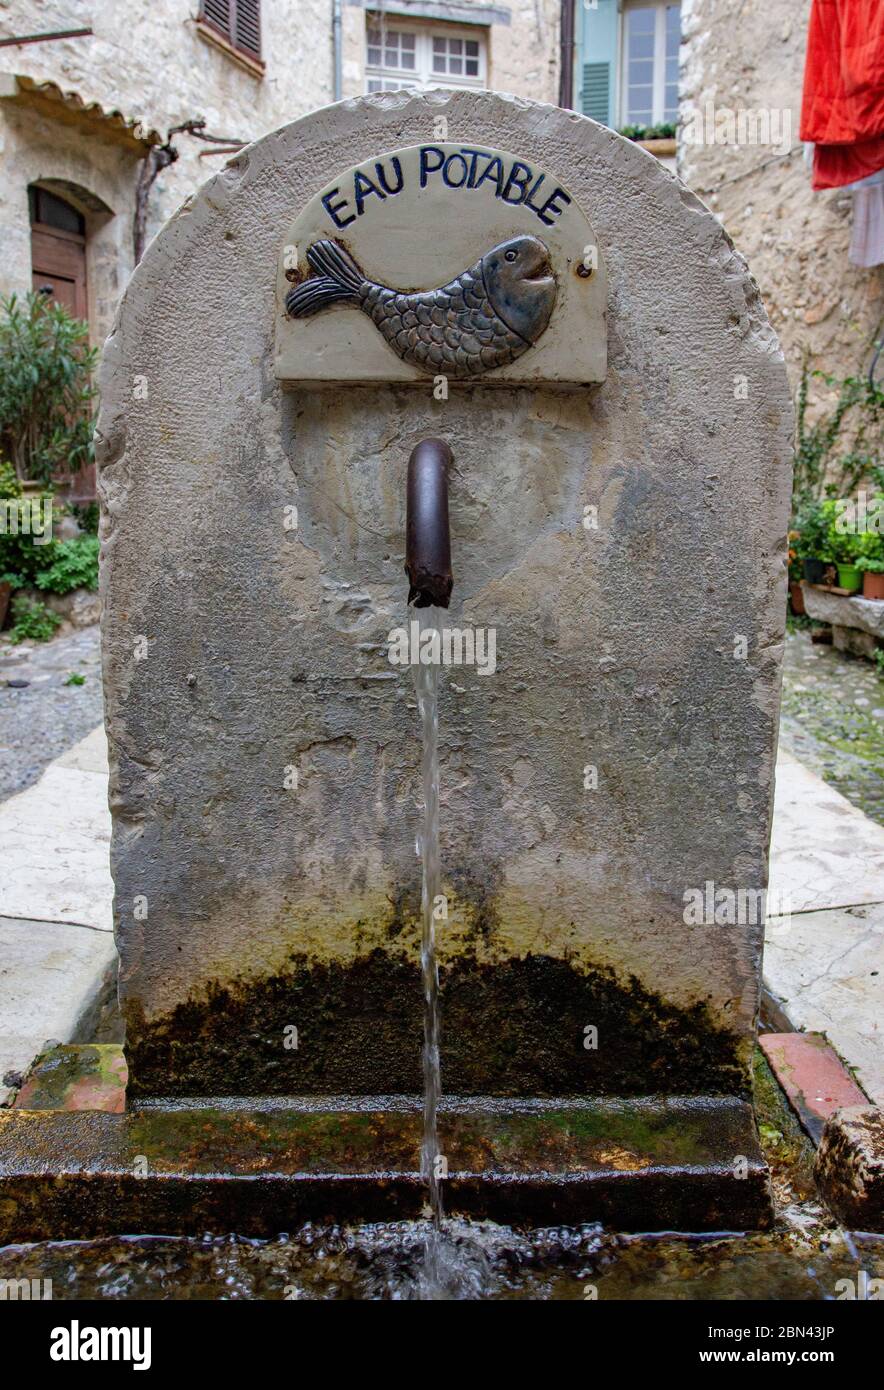 Una antigua fuente, llamada 'EAU POTABLE' (agua potable), con una imagen de un pez, distribuye agua en la ciudad de Saint-Paul-de-Vence, Francia Foto de stock